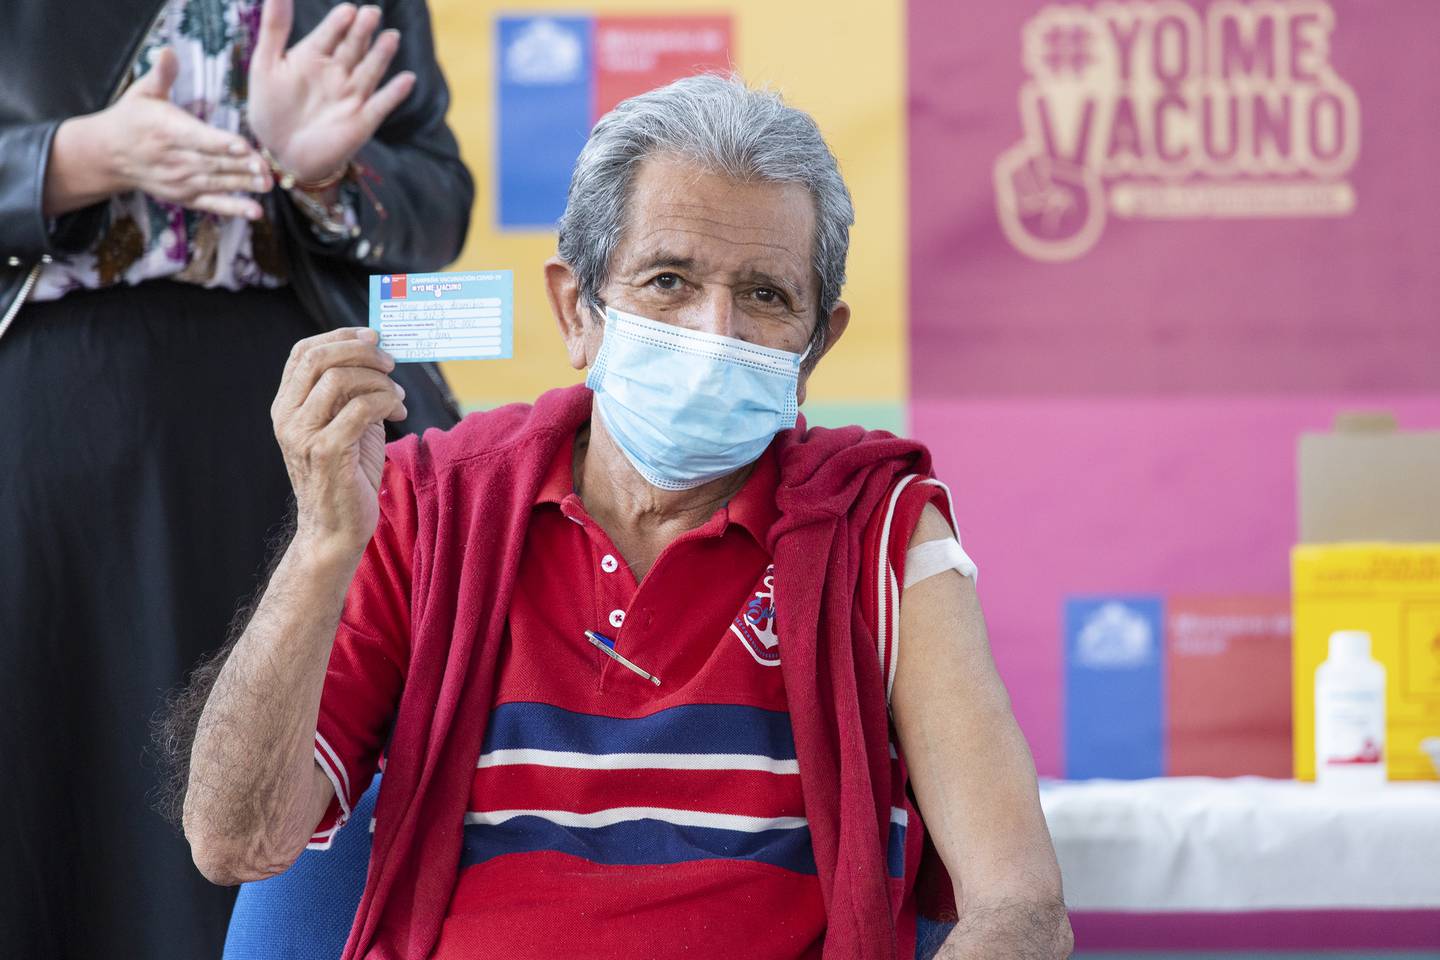 Una persona muestra su Pase de Movilidad después de ser vacunado contra el Covid-19 en Chile, el 8 de febrero de 2022.
Foto: Alejandra De Lucca V./Ministerio de Saluddfd